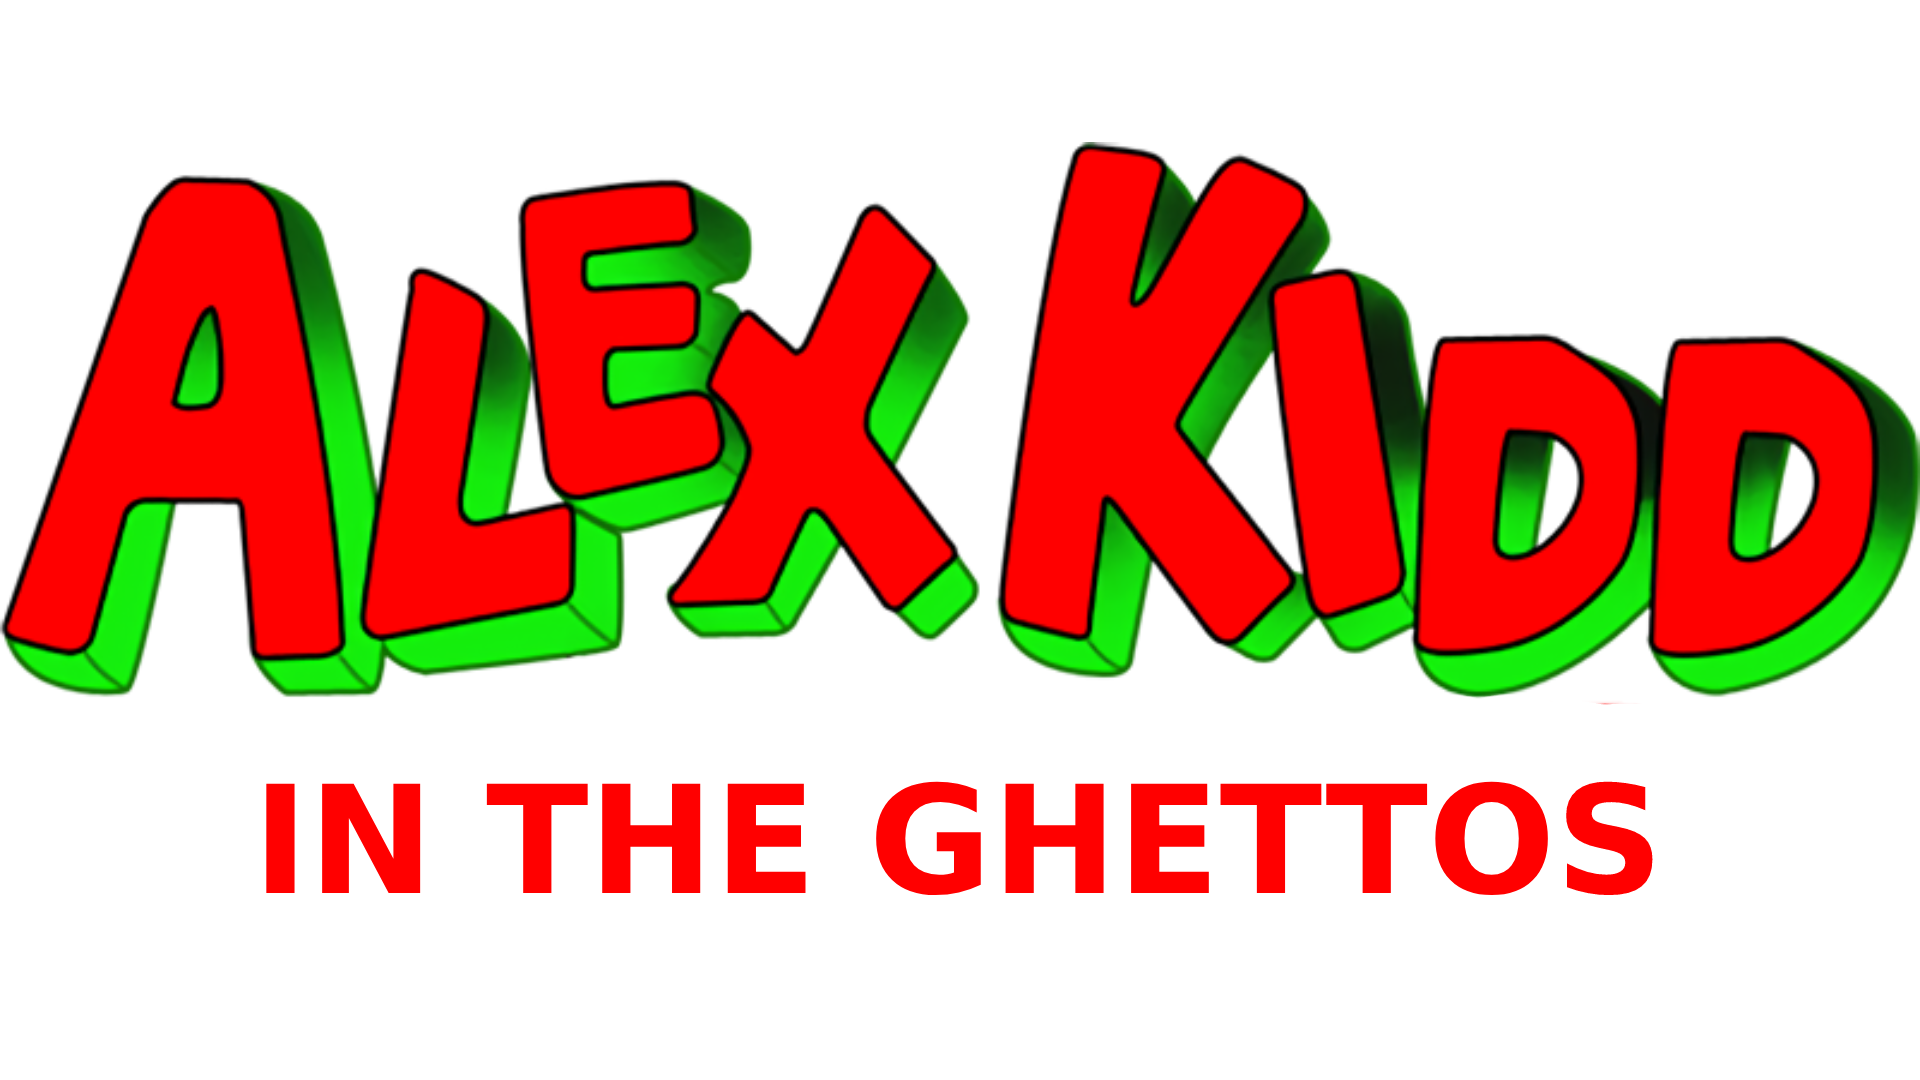 Alex Kidd in the ghettos